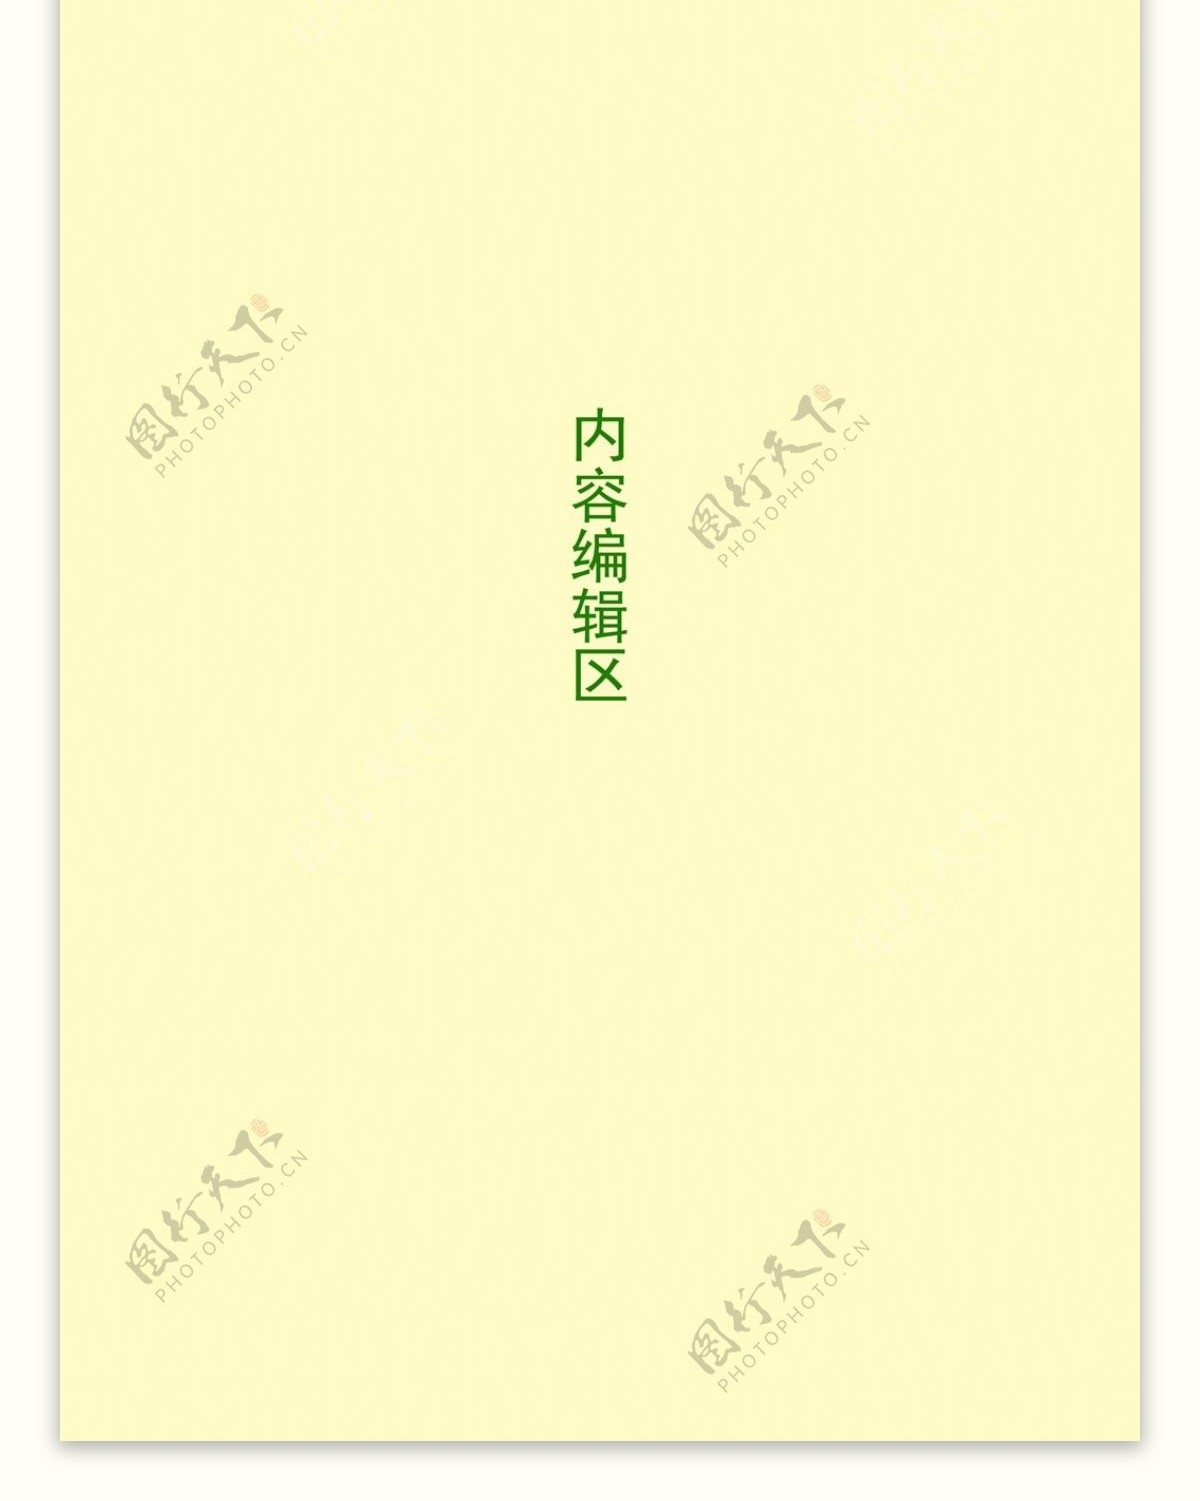 精美绿色中国结素材展架画面设计素材